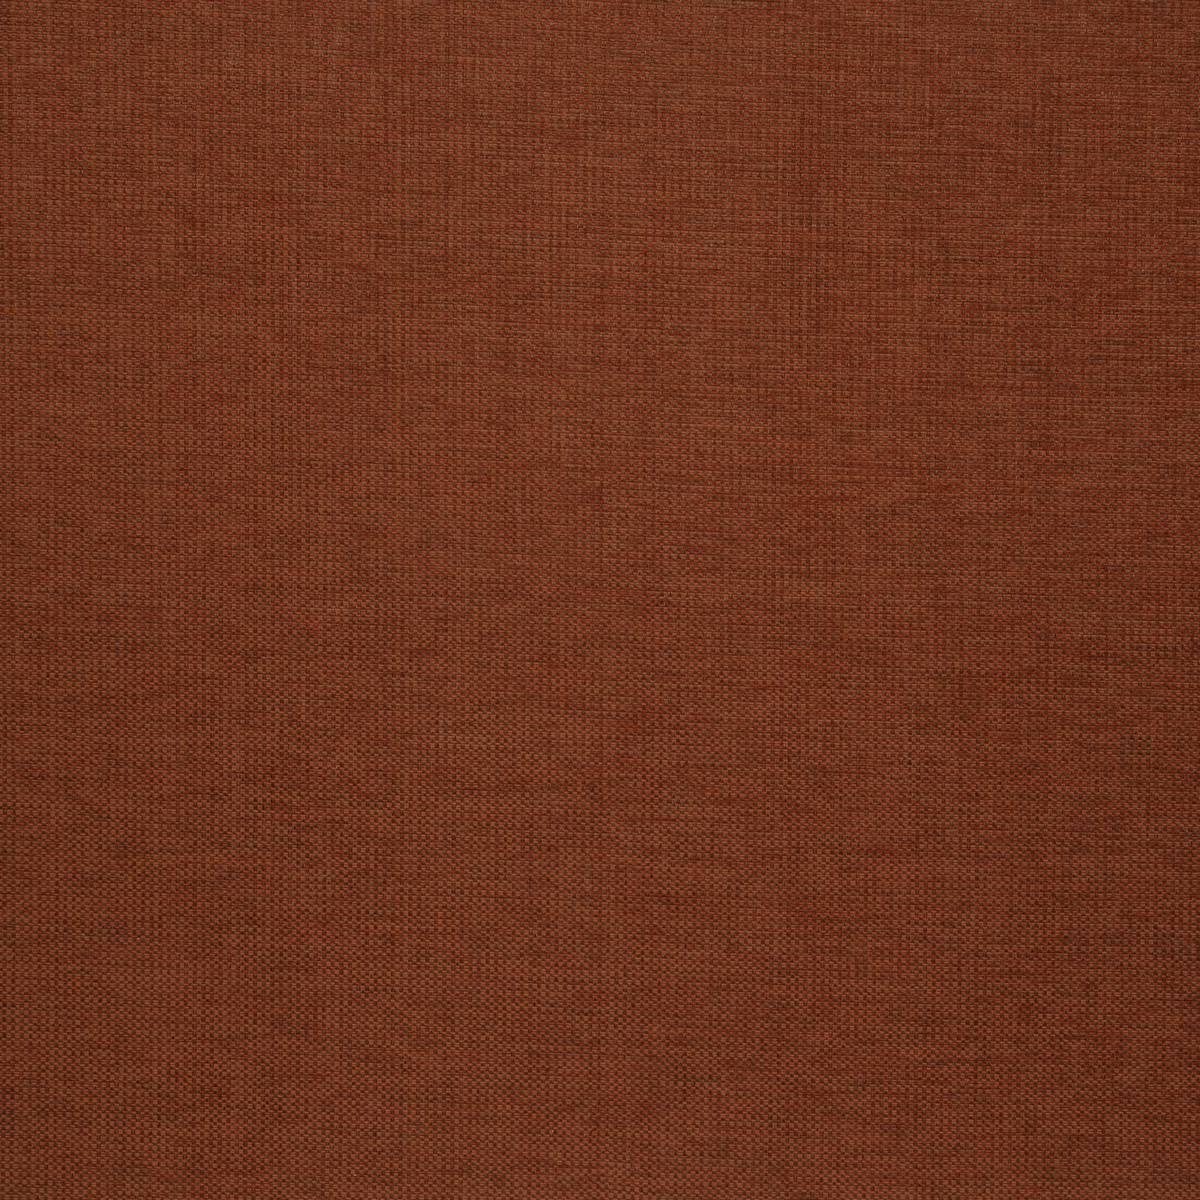 Delta Cinnamon Fabric by iLiv